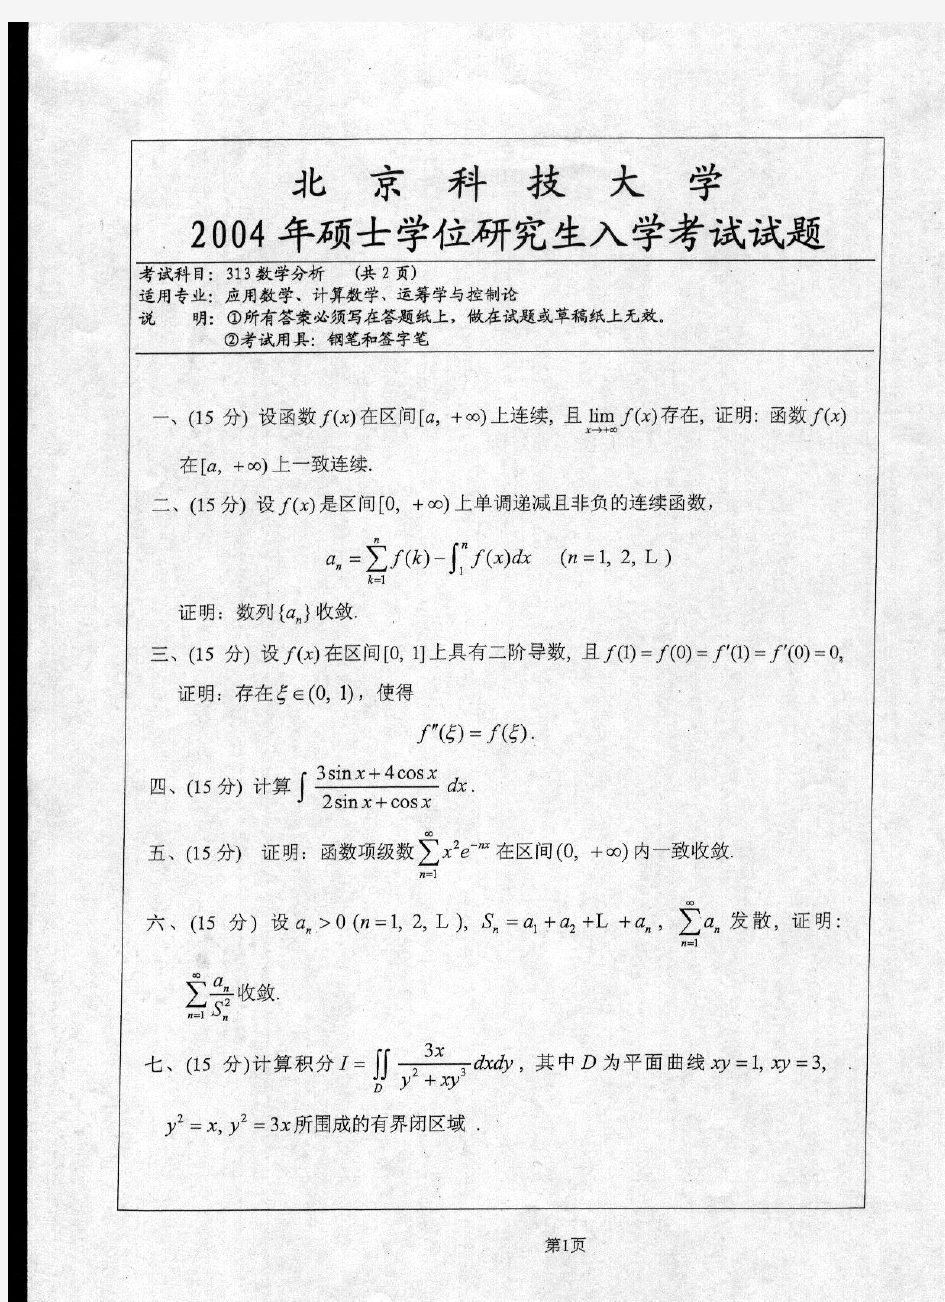 北京科技大学历年数学分析考研真题汇编(2003-2017)